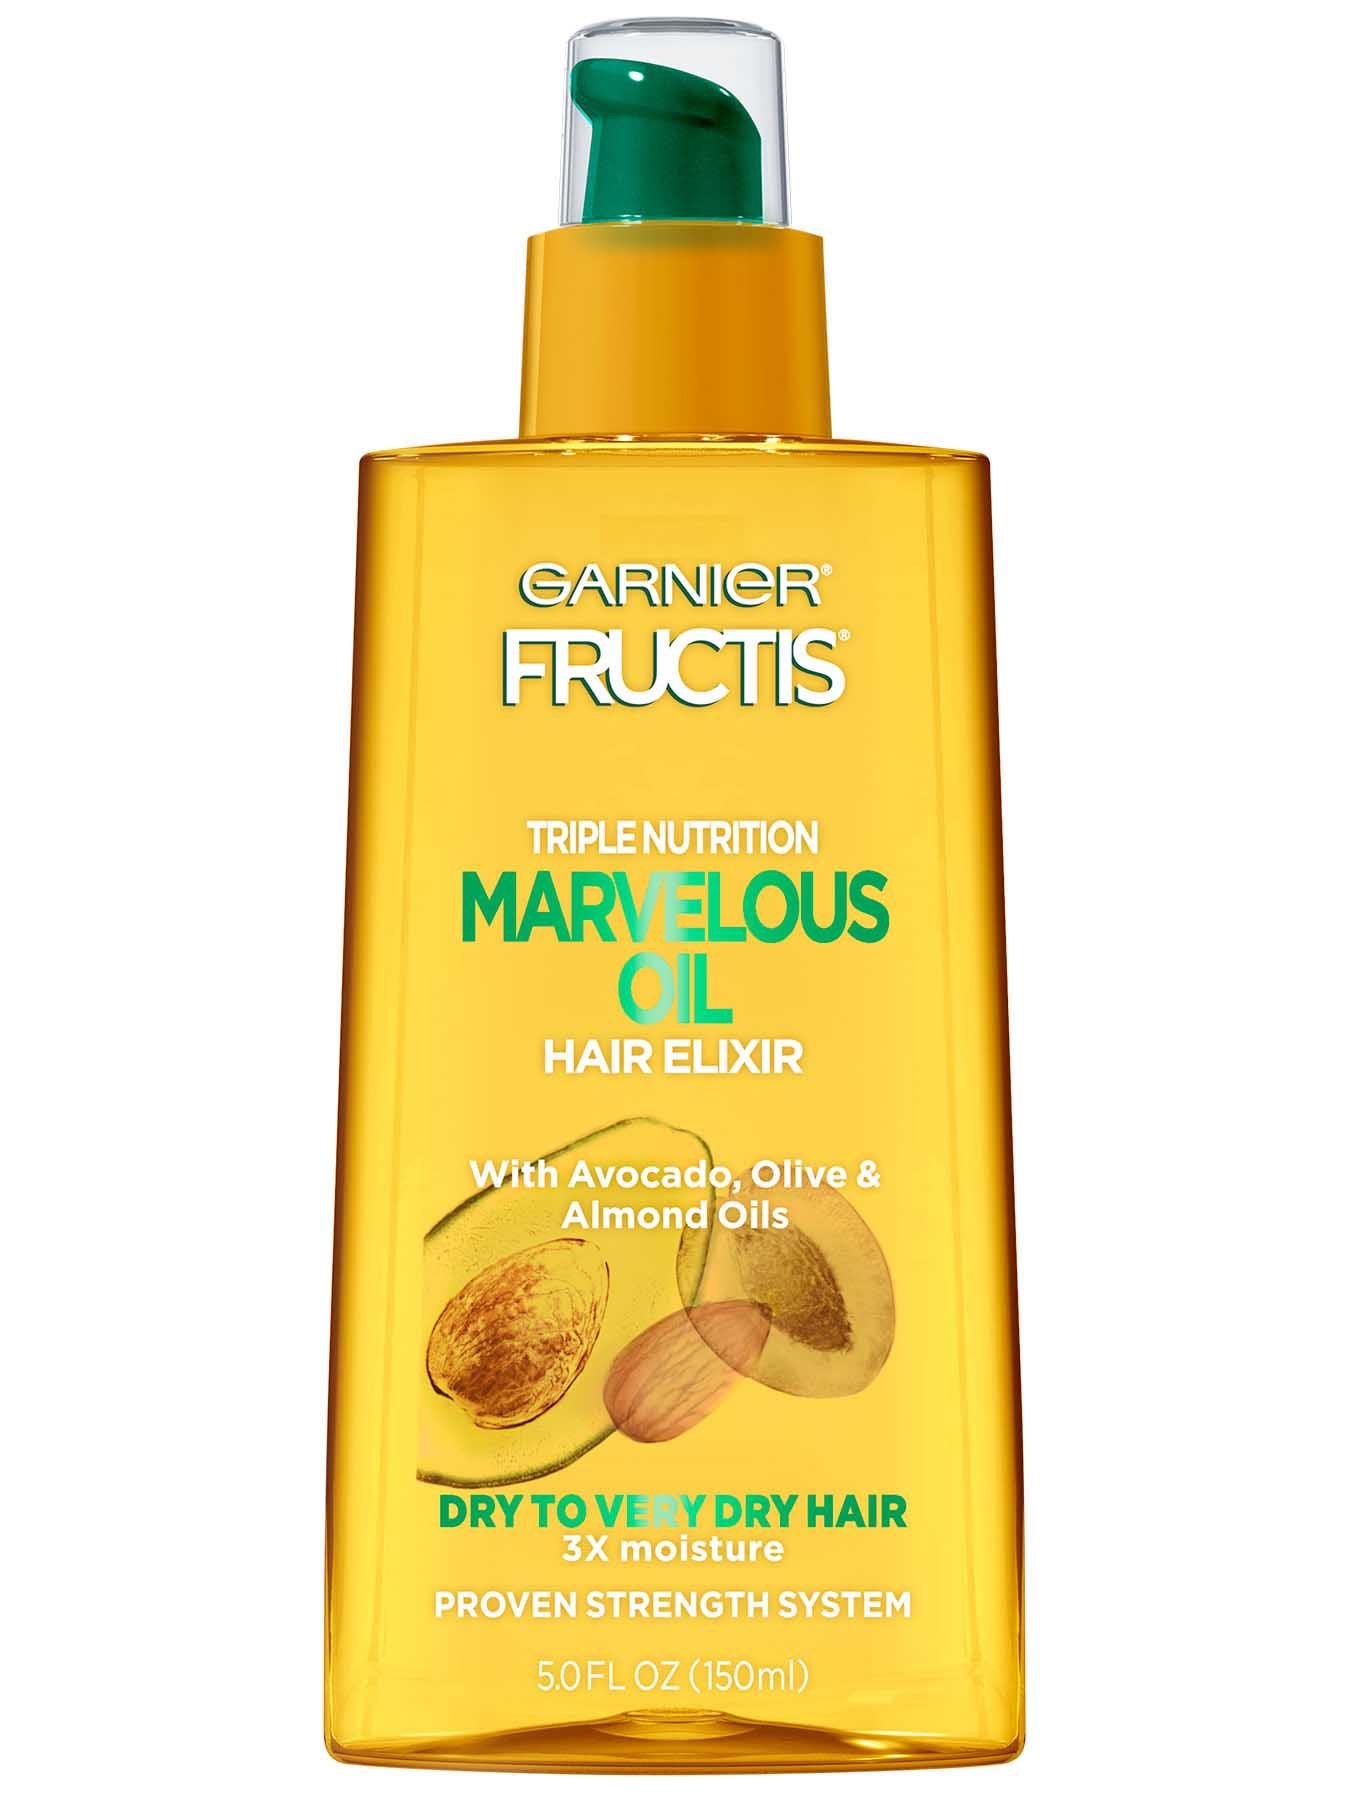 marvelous-oil-hair-elixir-tratamiento-para-cabello-seco-garnier-fructis